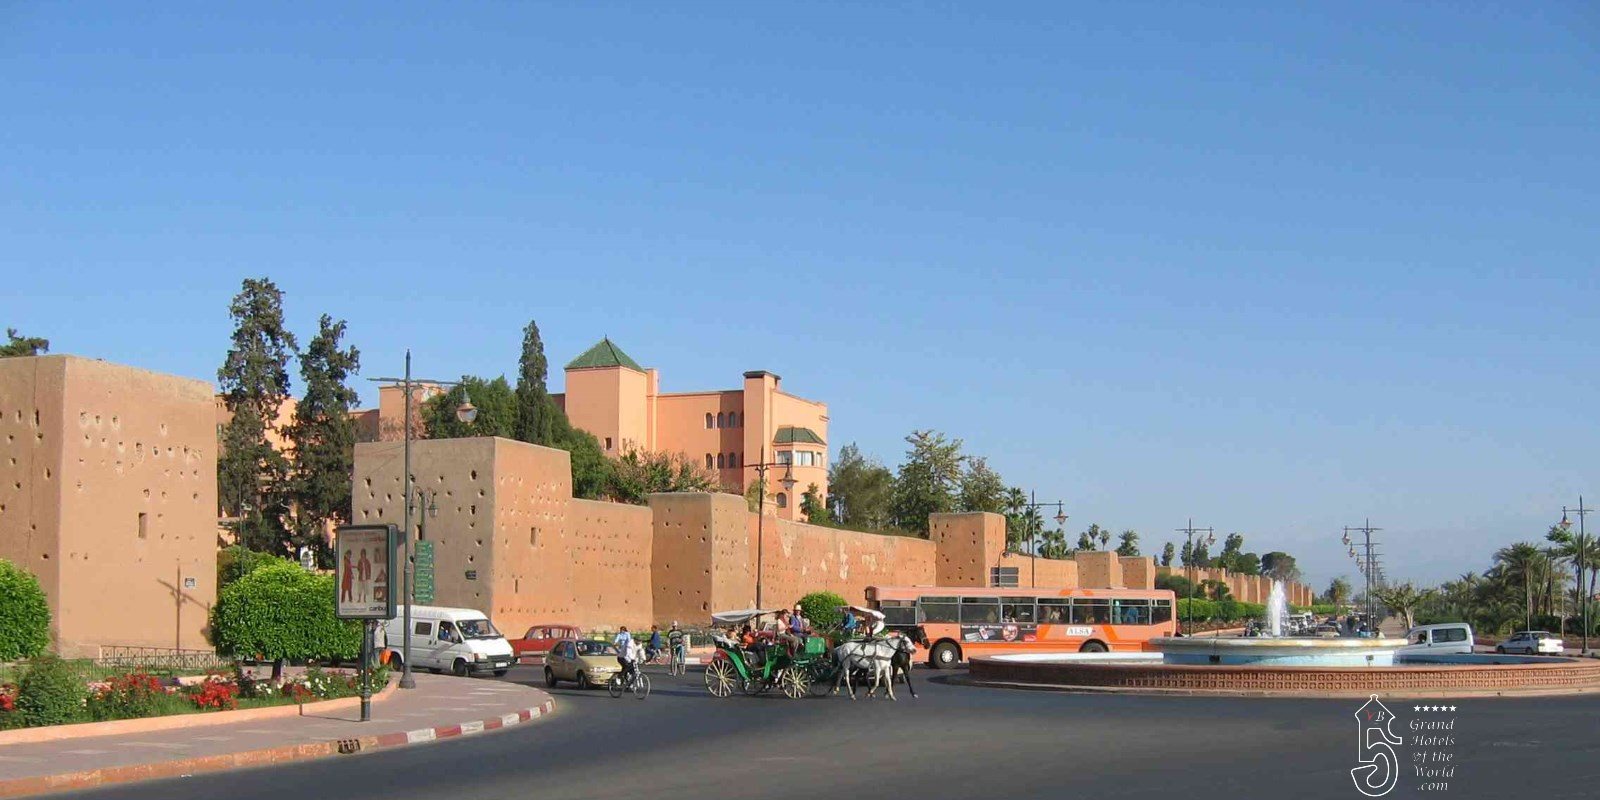 La Mamounia in Marrakech